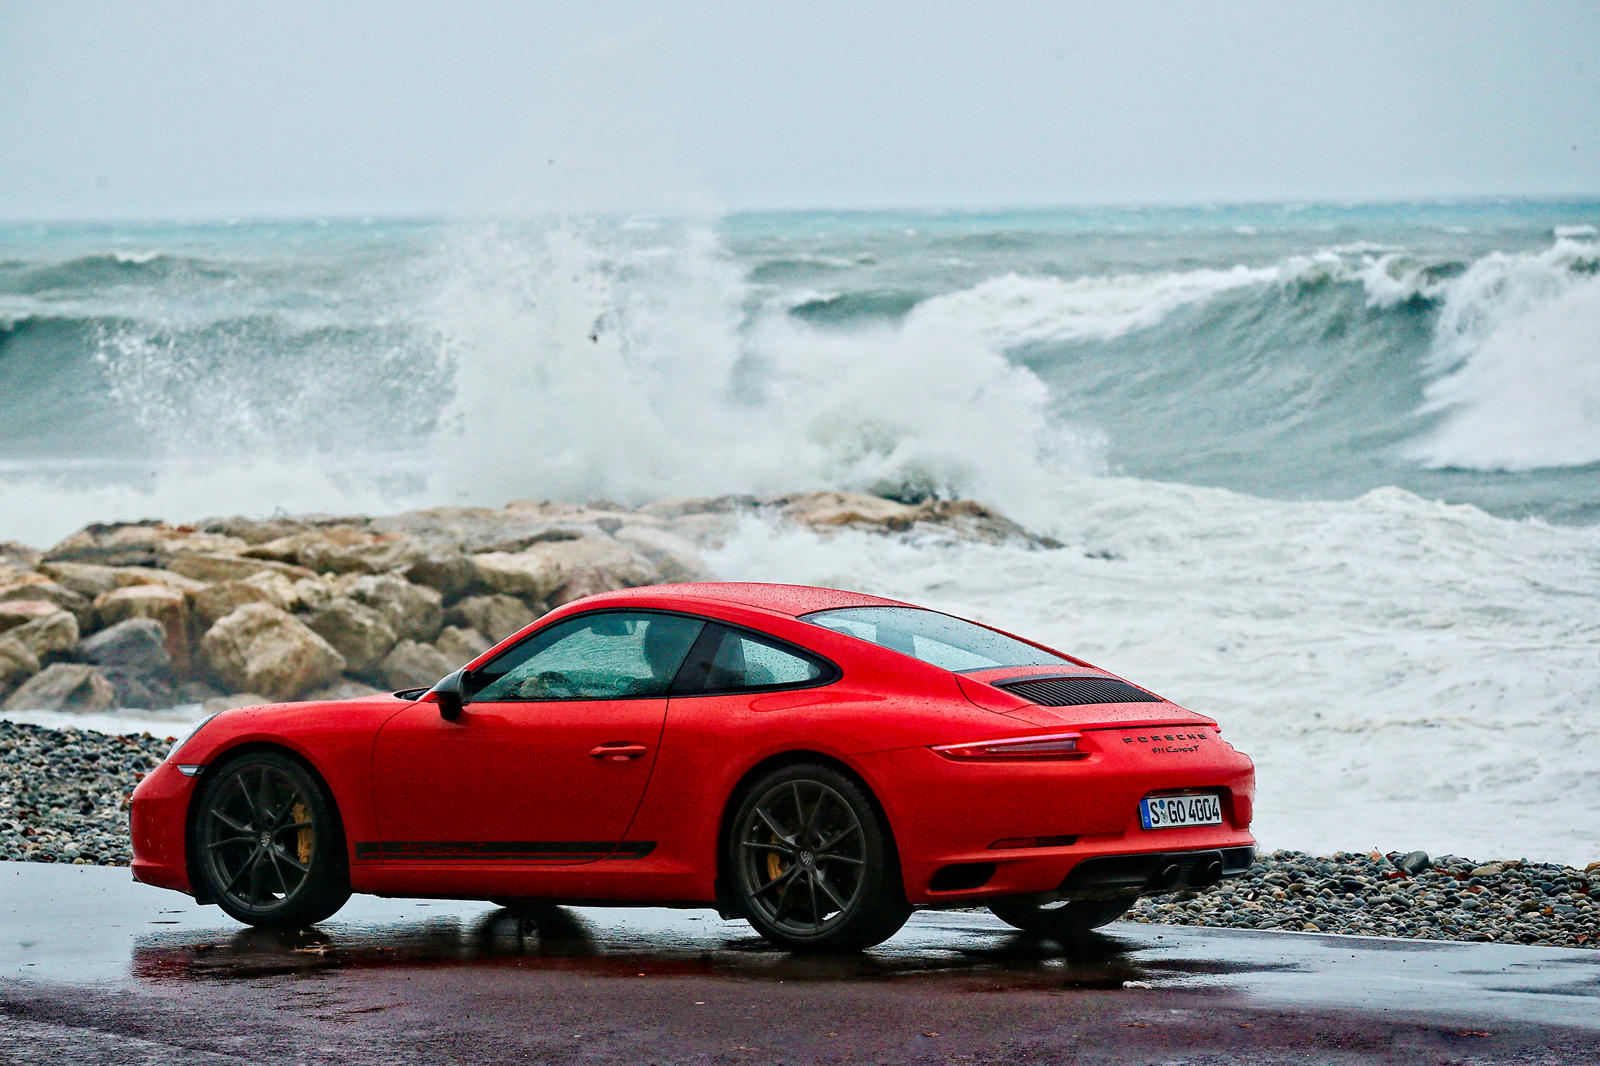 От базового 911 Carrera до хардкорного 911 GT2 RS, 911 доступен буквально для каждого бюджета с начальной ценой от 90 000 долларов. Мы находимся всего в нескольких шагах от официального дебюта следующего 992 поколения 911, но Porsche сохраняет свои д